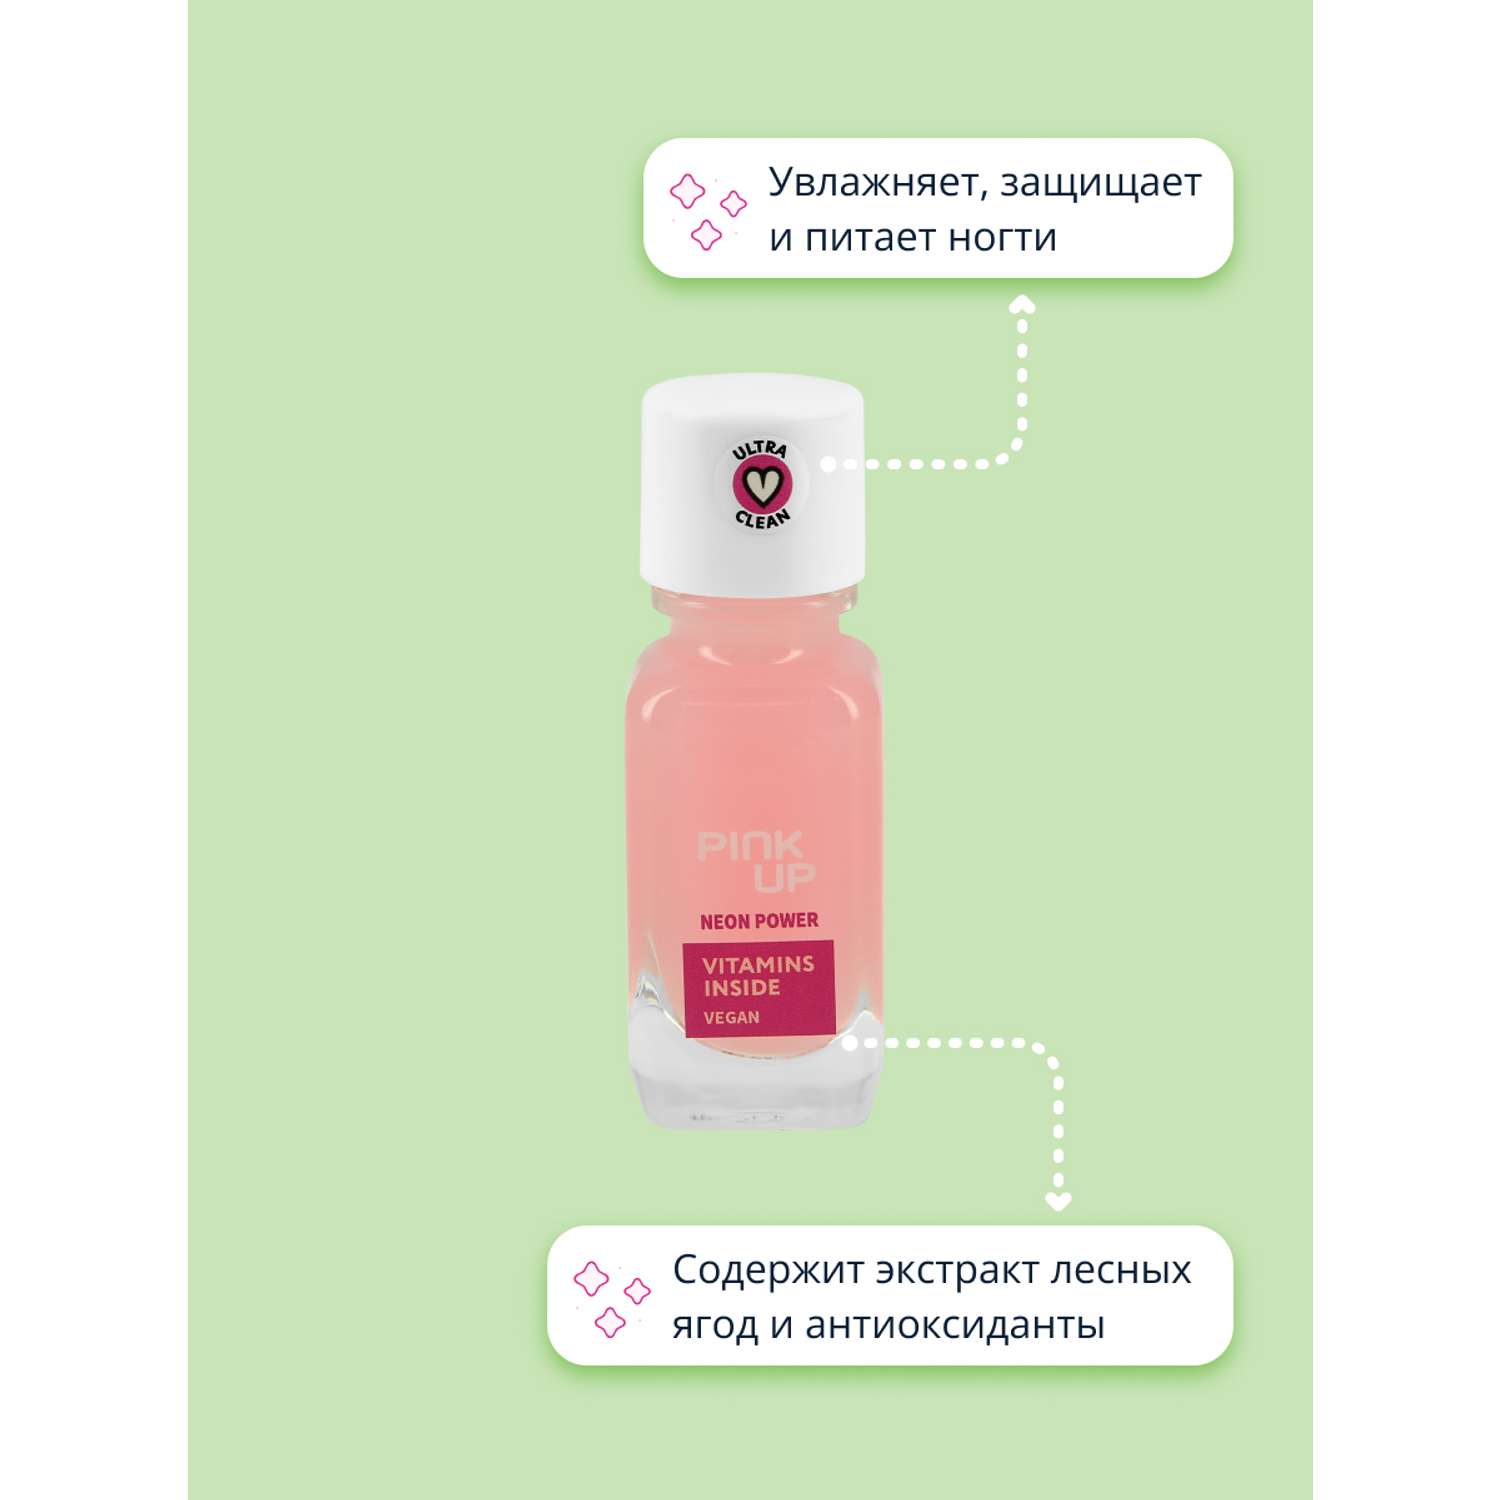 Средство для укрепления ногтей Pink Up Neon power с антиоксидантами и экстрактом лесных ягод 11 мл - фото 3